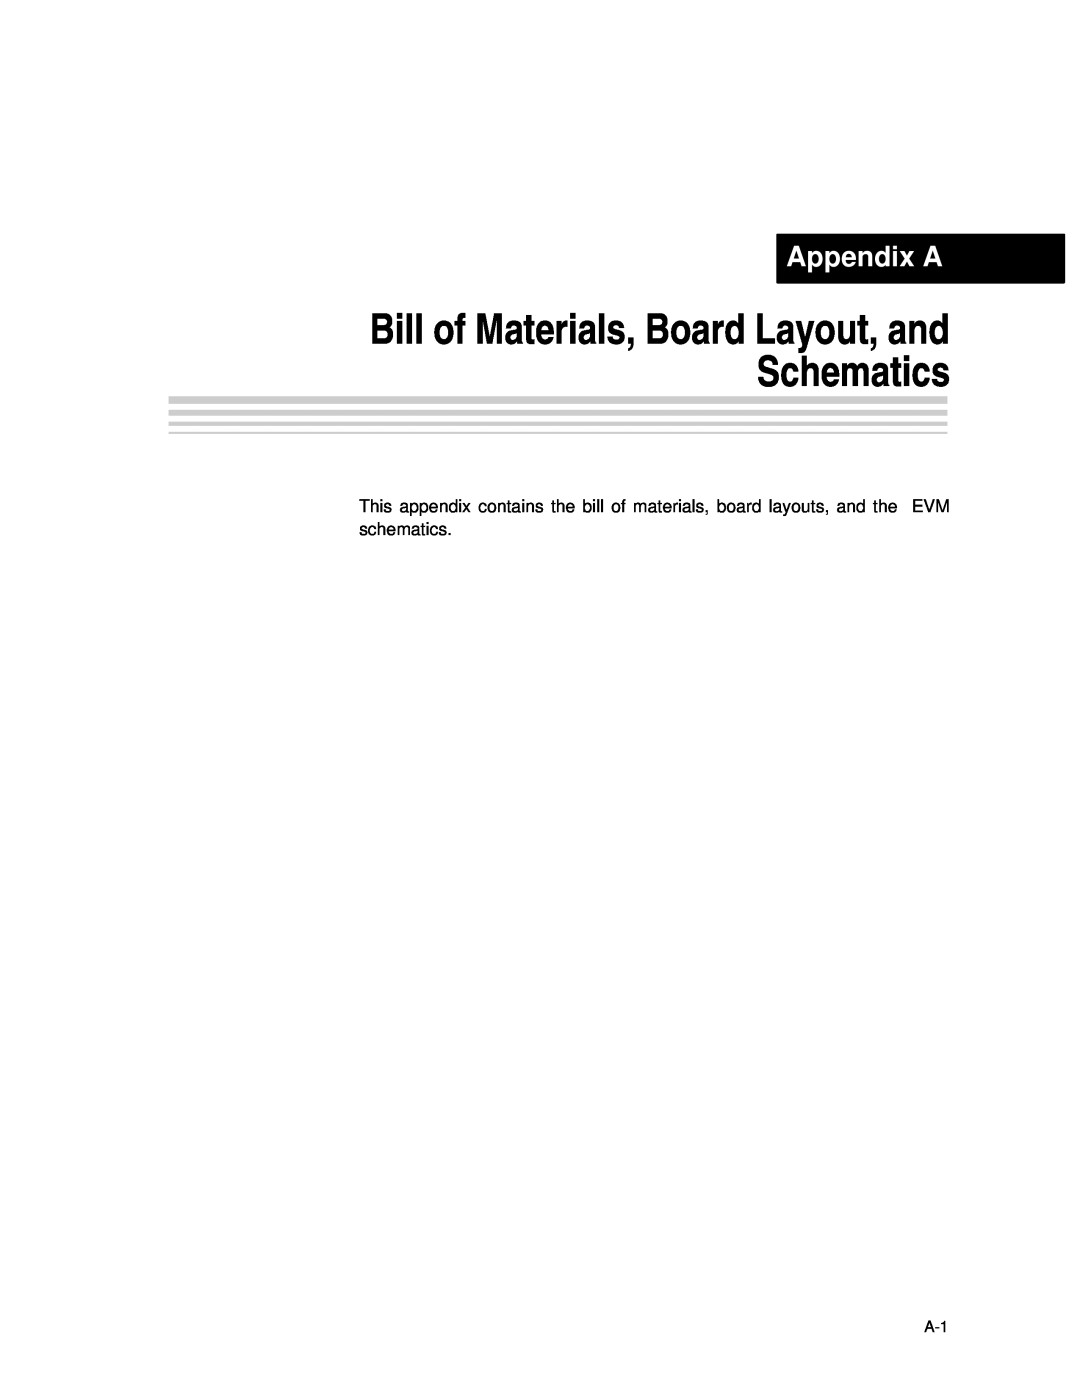 Texas Instruments SLAU081 manual Appendix A, Bill of Materials, Board Layout, and Schematics 